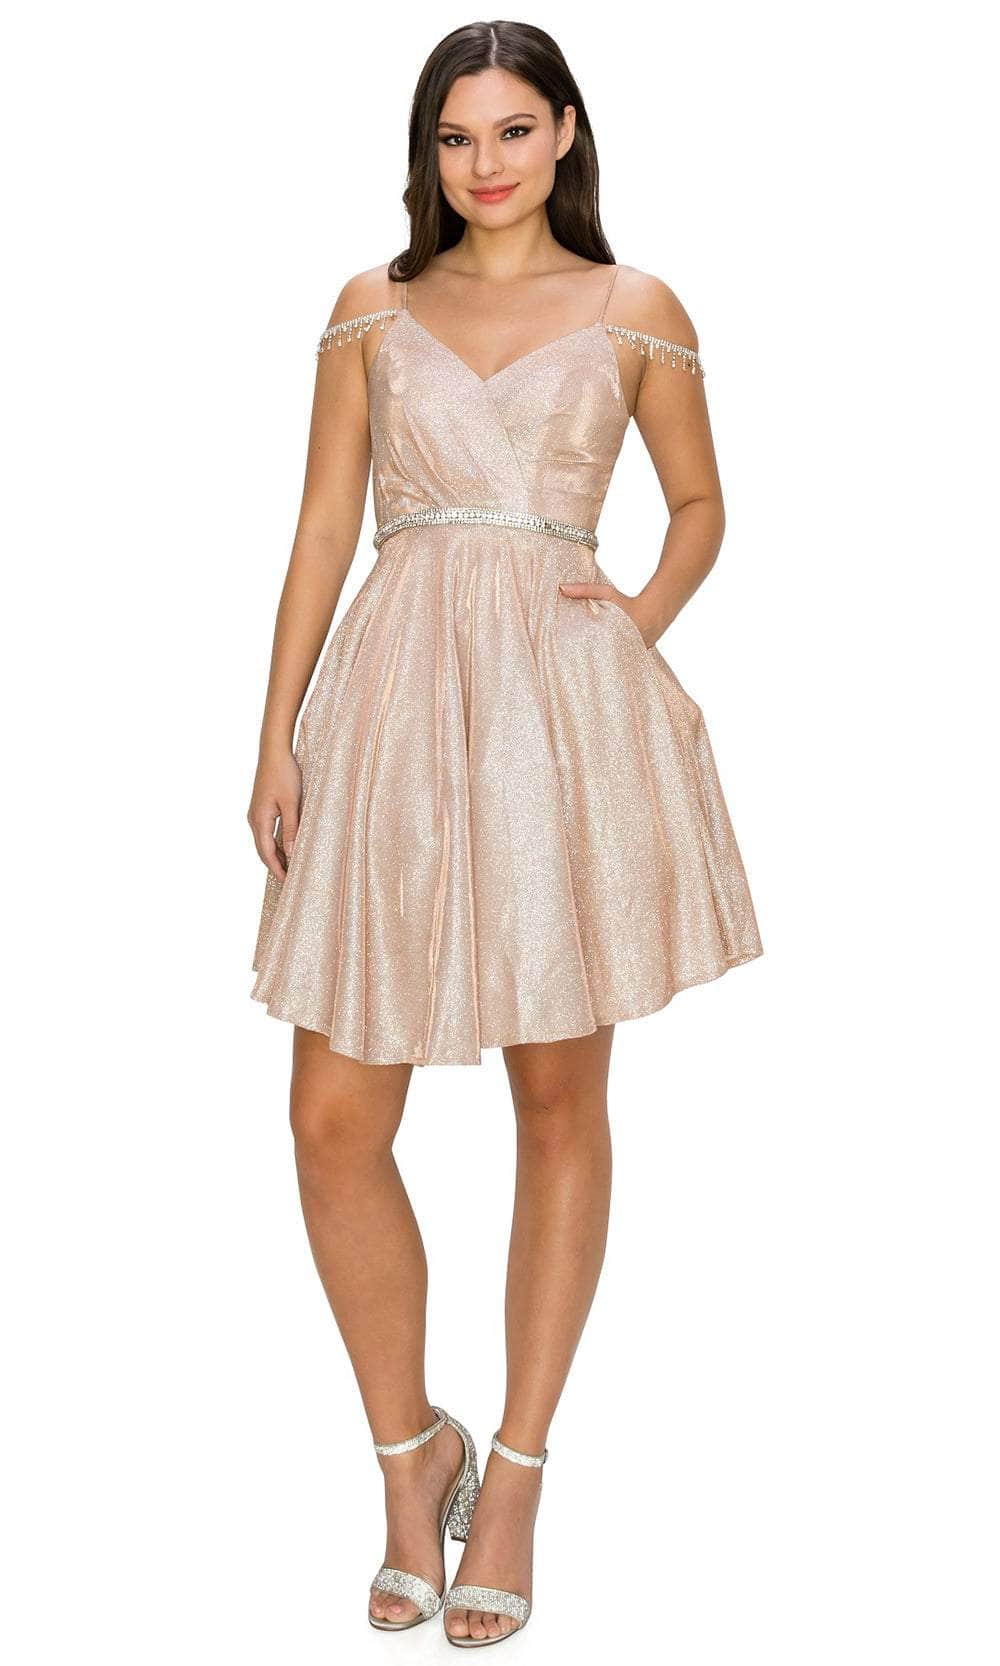 Cinderella Couture 8014J - Glittered Cold Shoulder Cocktail Dress
